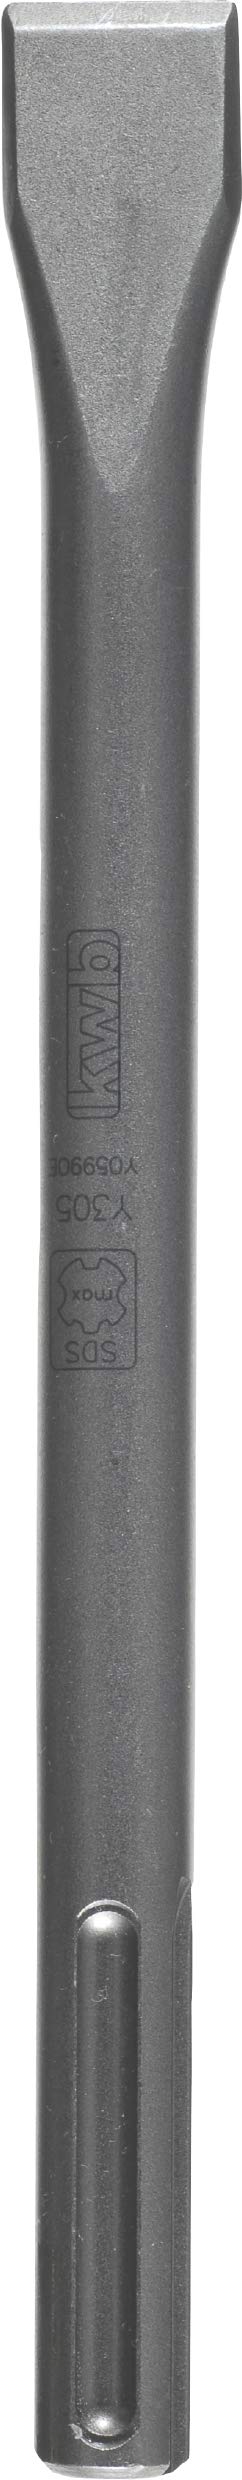 kwb SDS max Flachmeißel (Länge 400 mm, Schneide 25 mm, Spezialstahl, universel, professional)